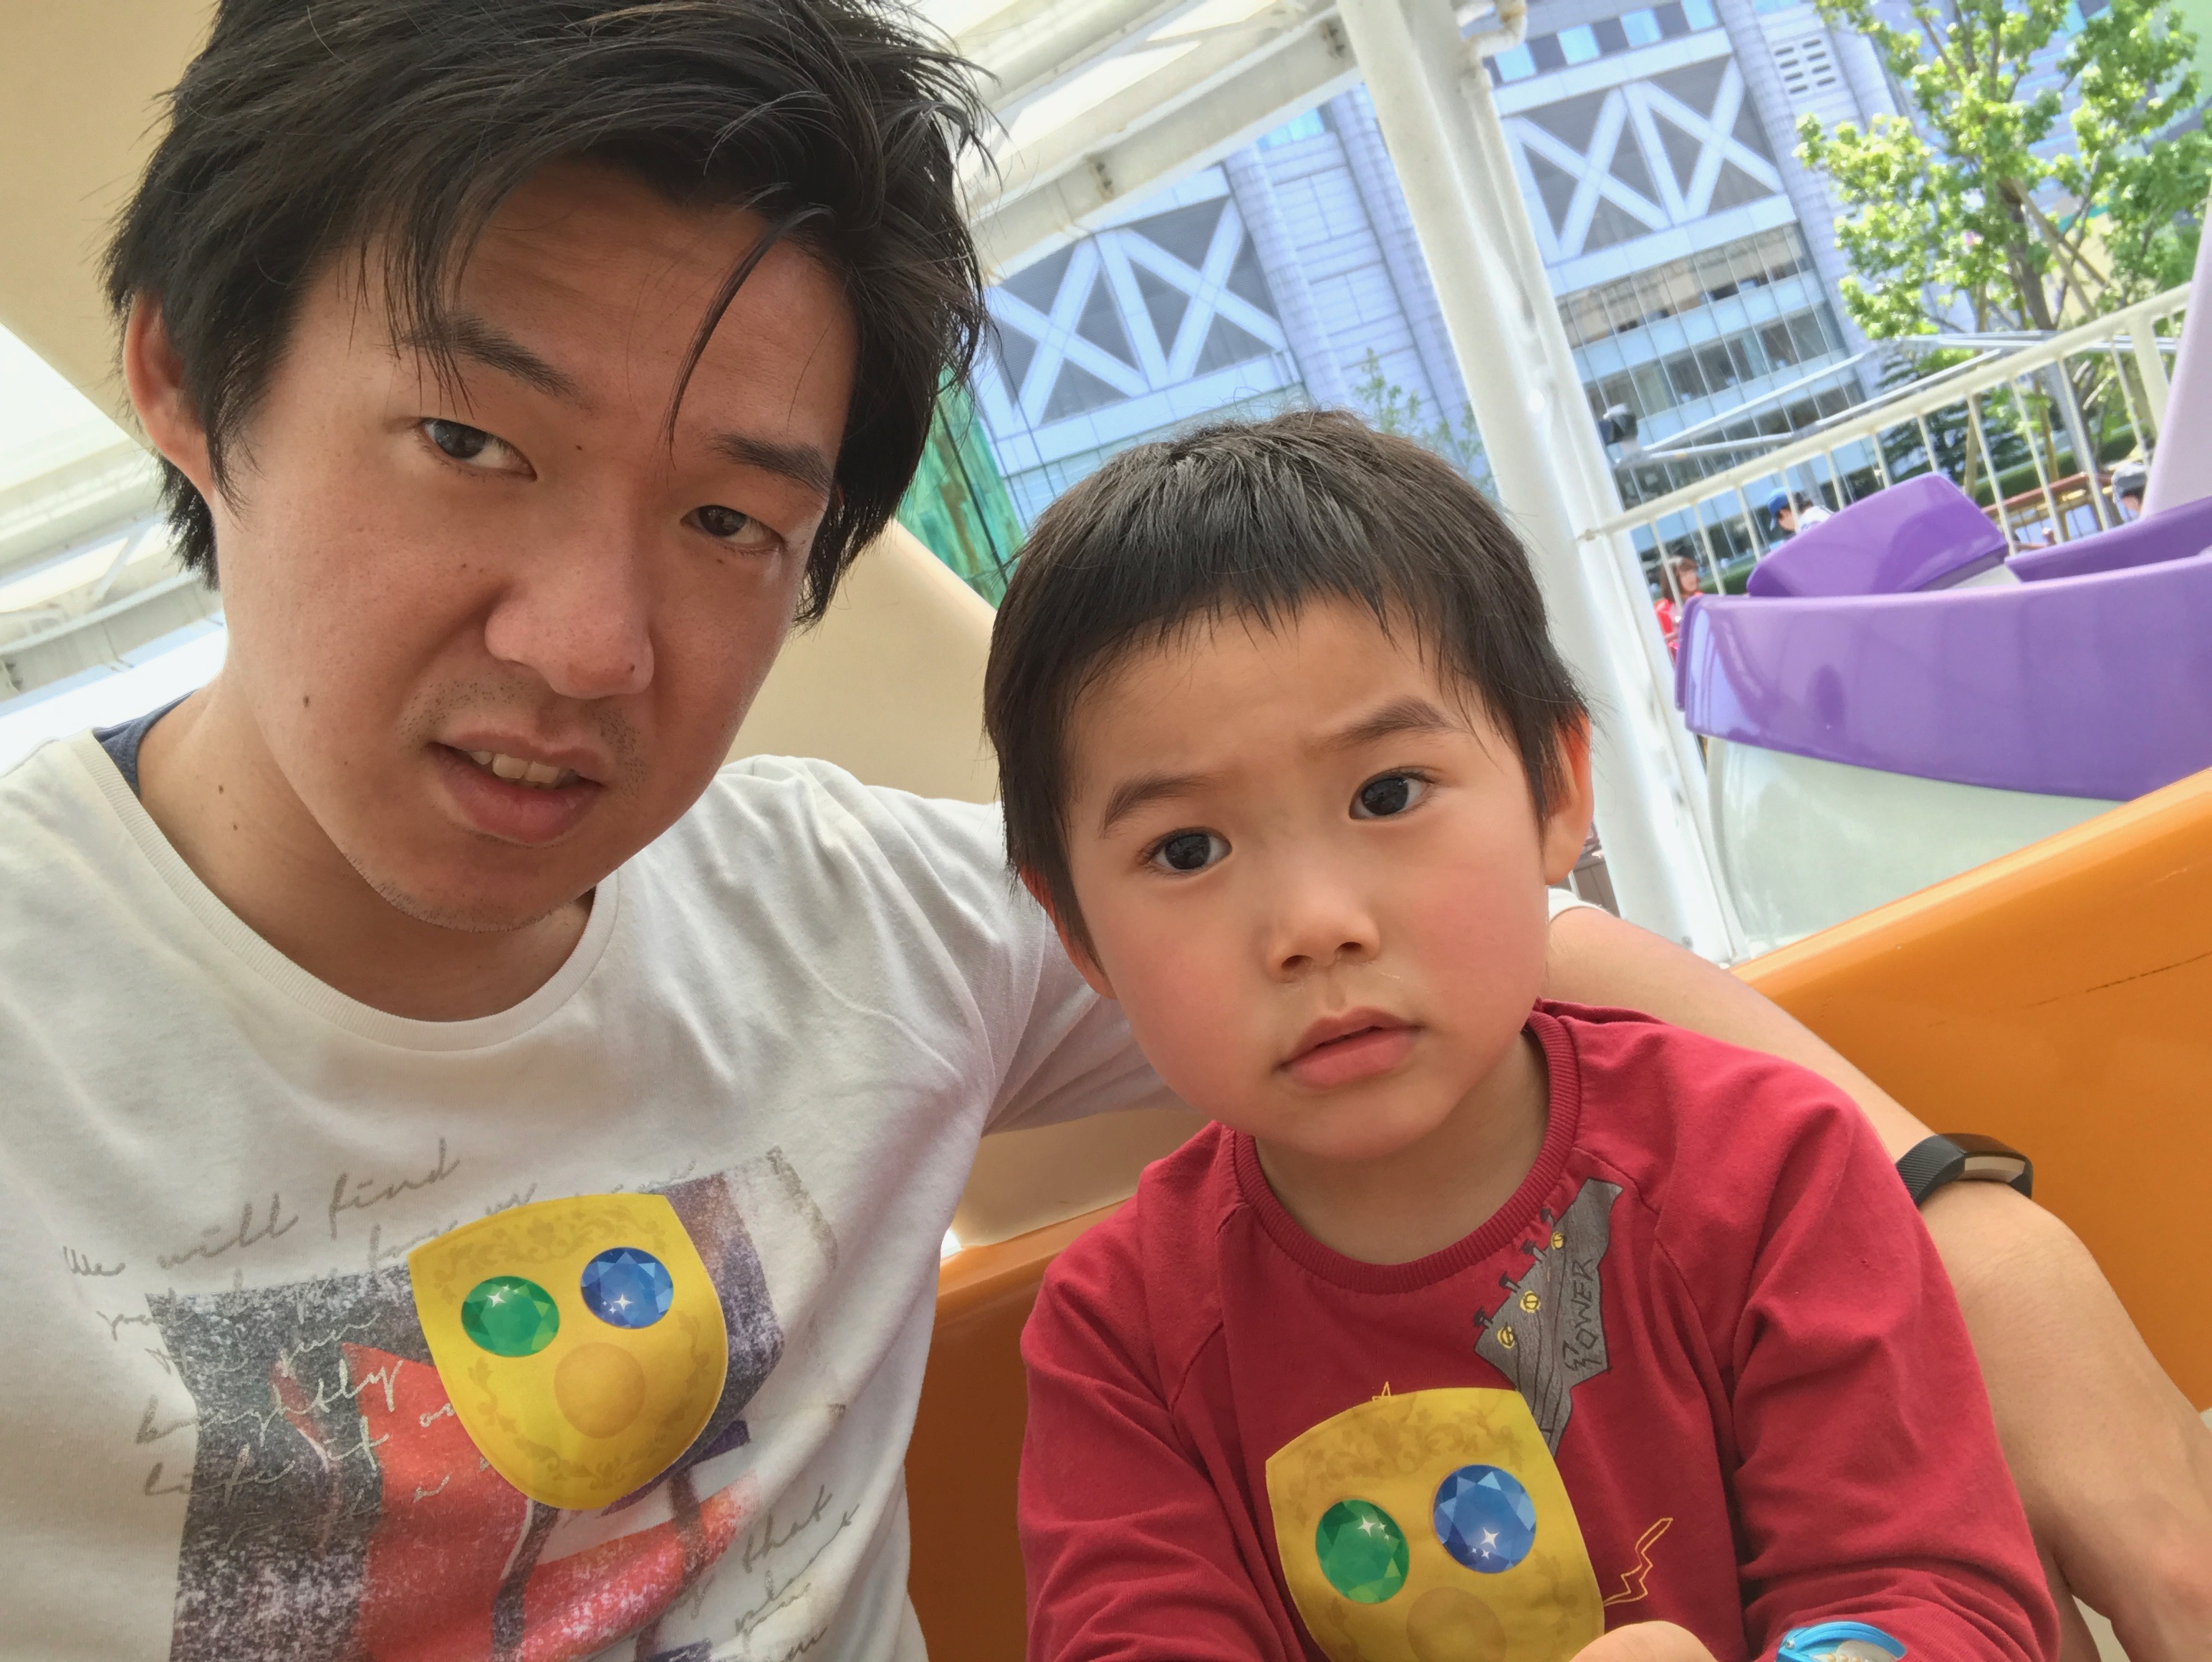 息子と二人で東京ドームのしまじろうイベントに行ってきた